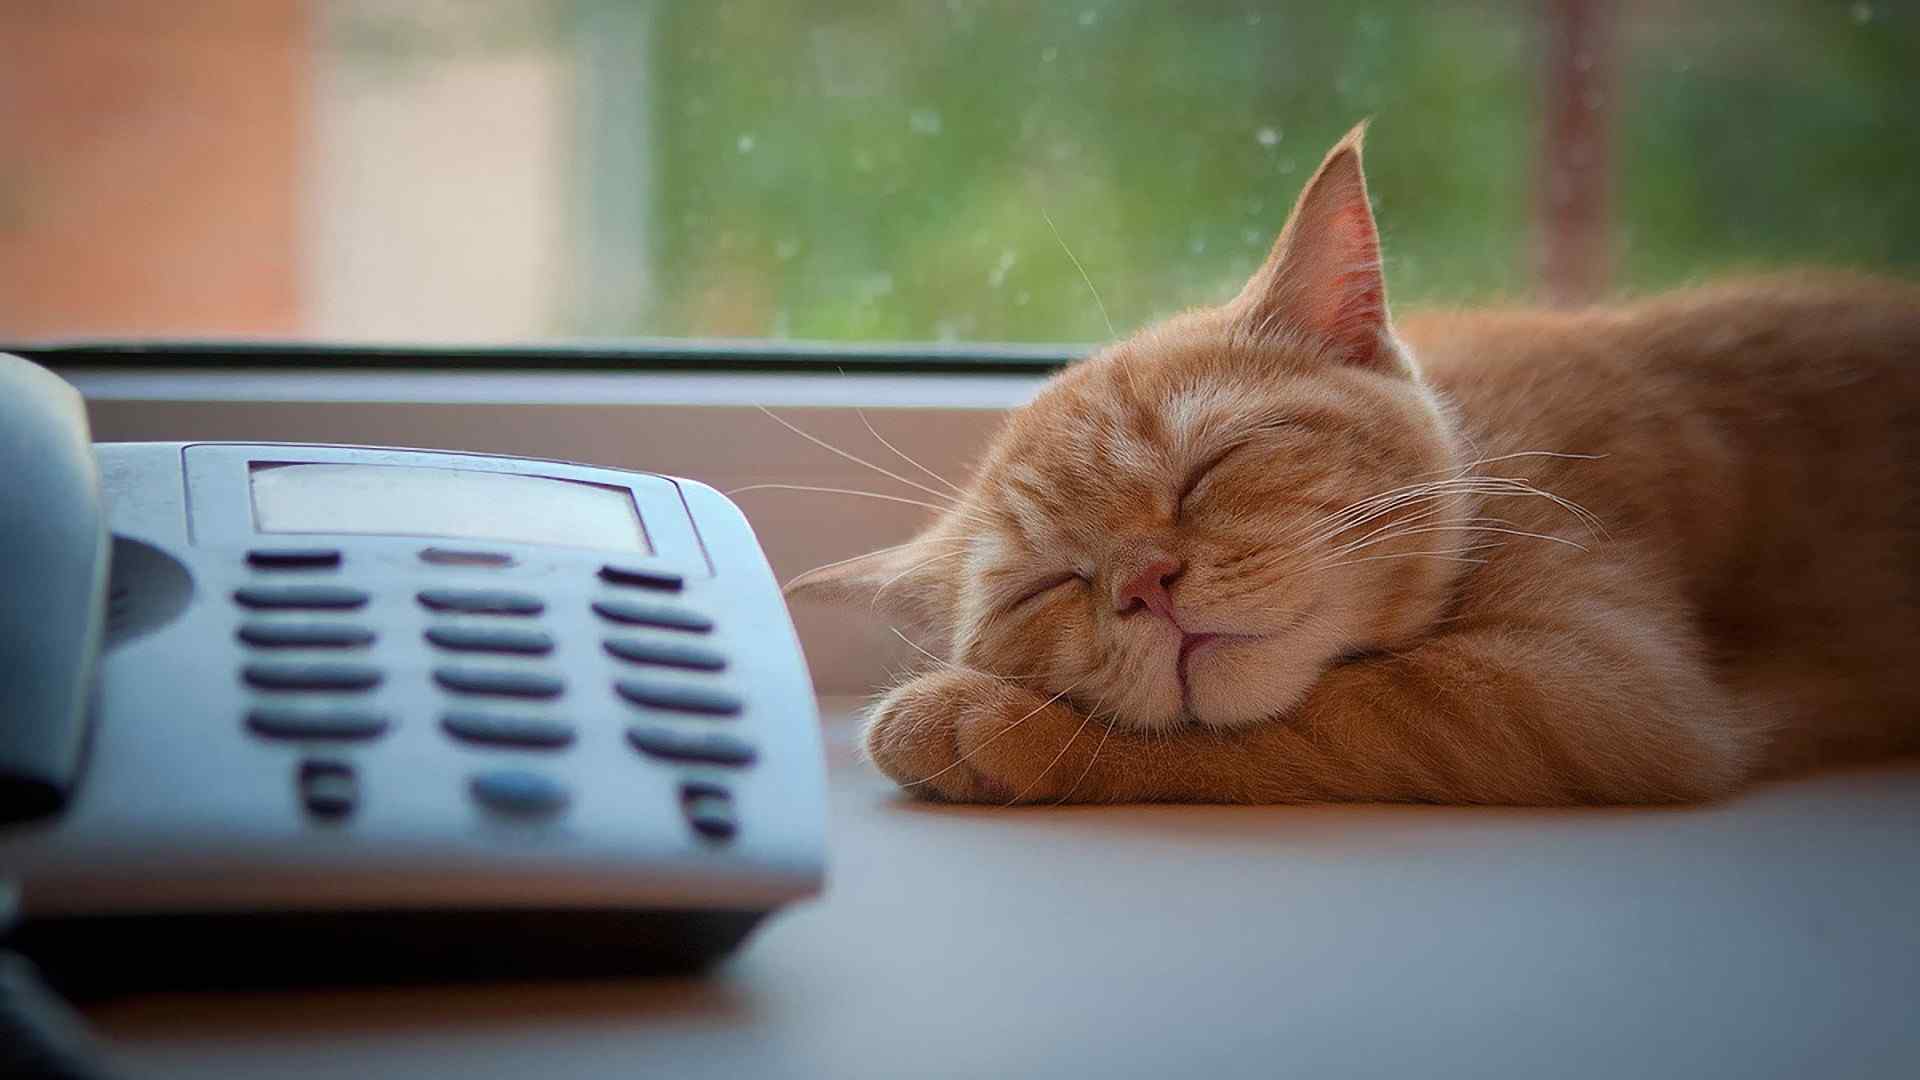 可爱呆萌小猫动物高清摄影电脑桌面壁纸第二辑